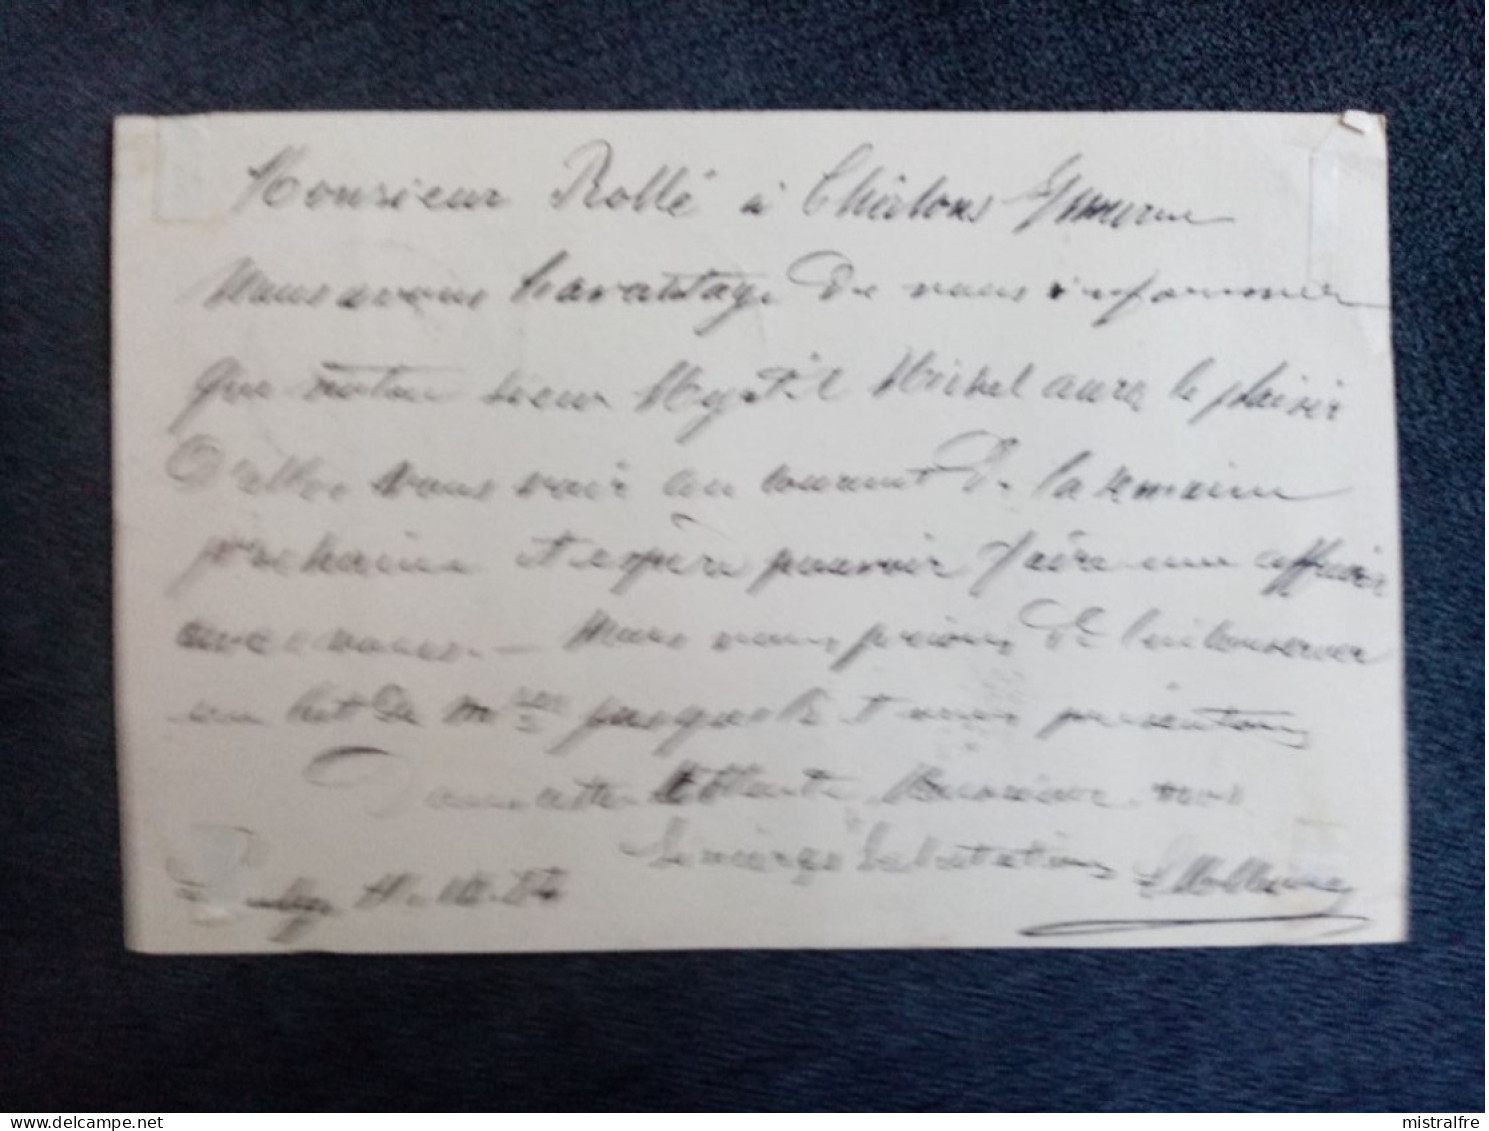 LUXEMBOURG. 1884. Carte Postale De Luxembourg à Chalon Sur Marne Via Paris. Exp L.M MICHEL " Cuirs Et Peaux " - Ganzsachen